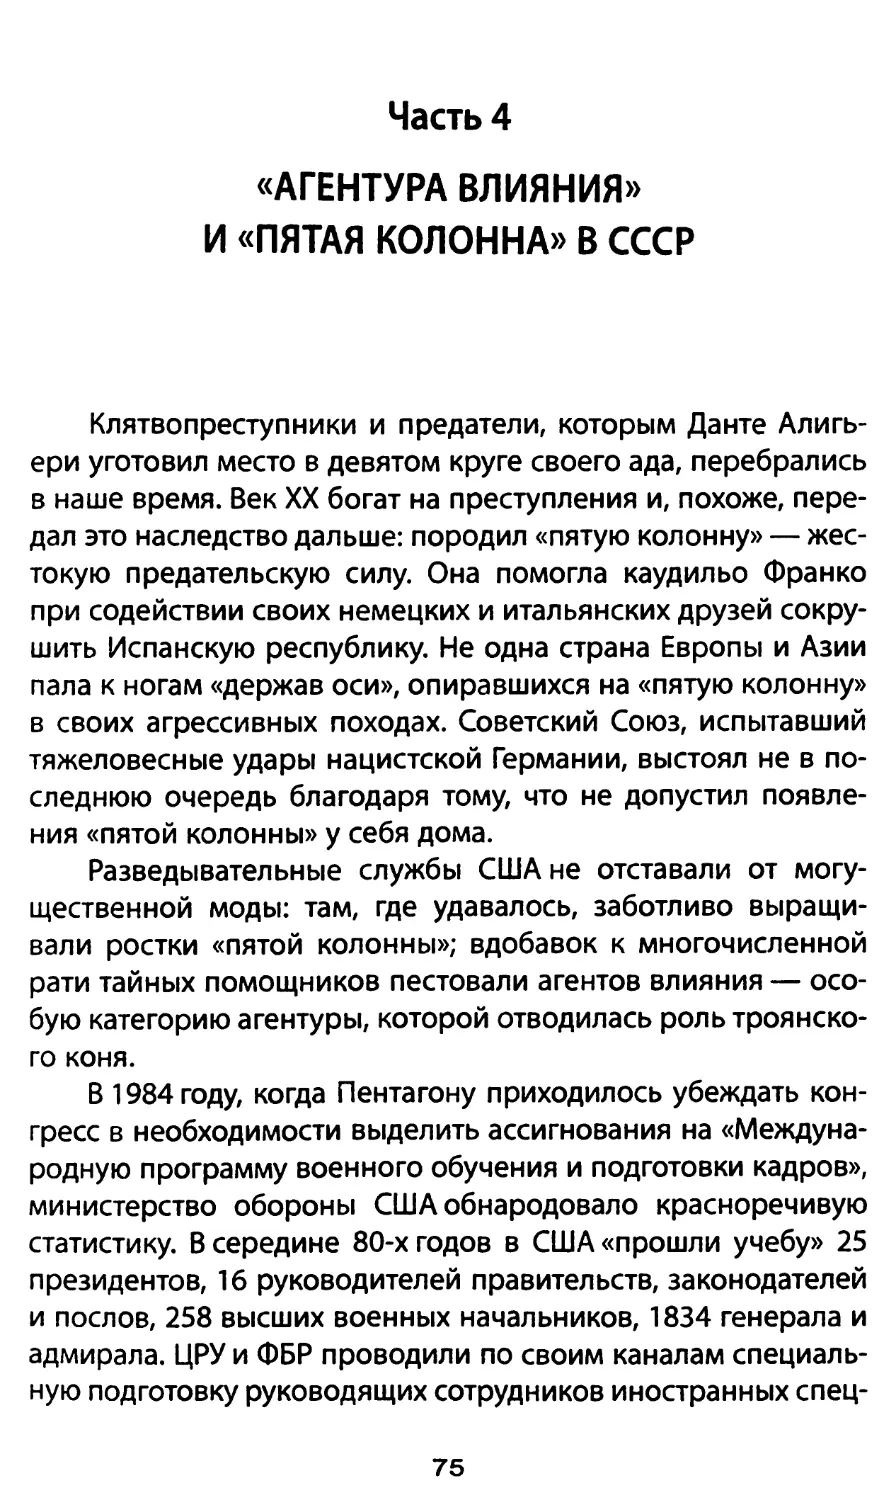 Часть 4. «Агентура влияния» и «пятая колонна» в СССР